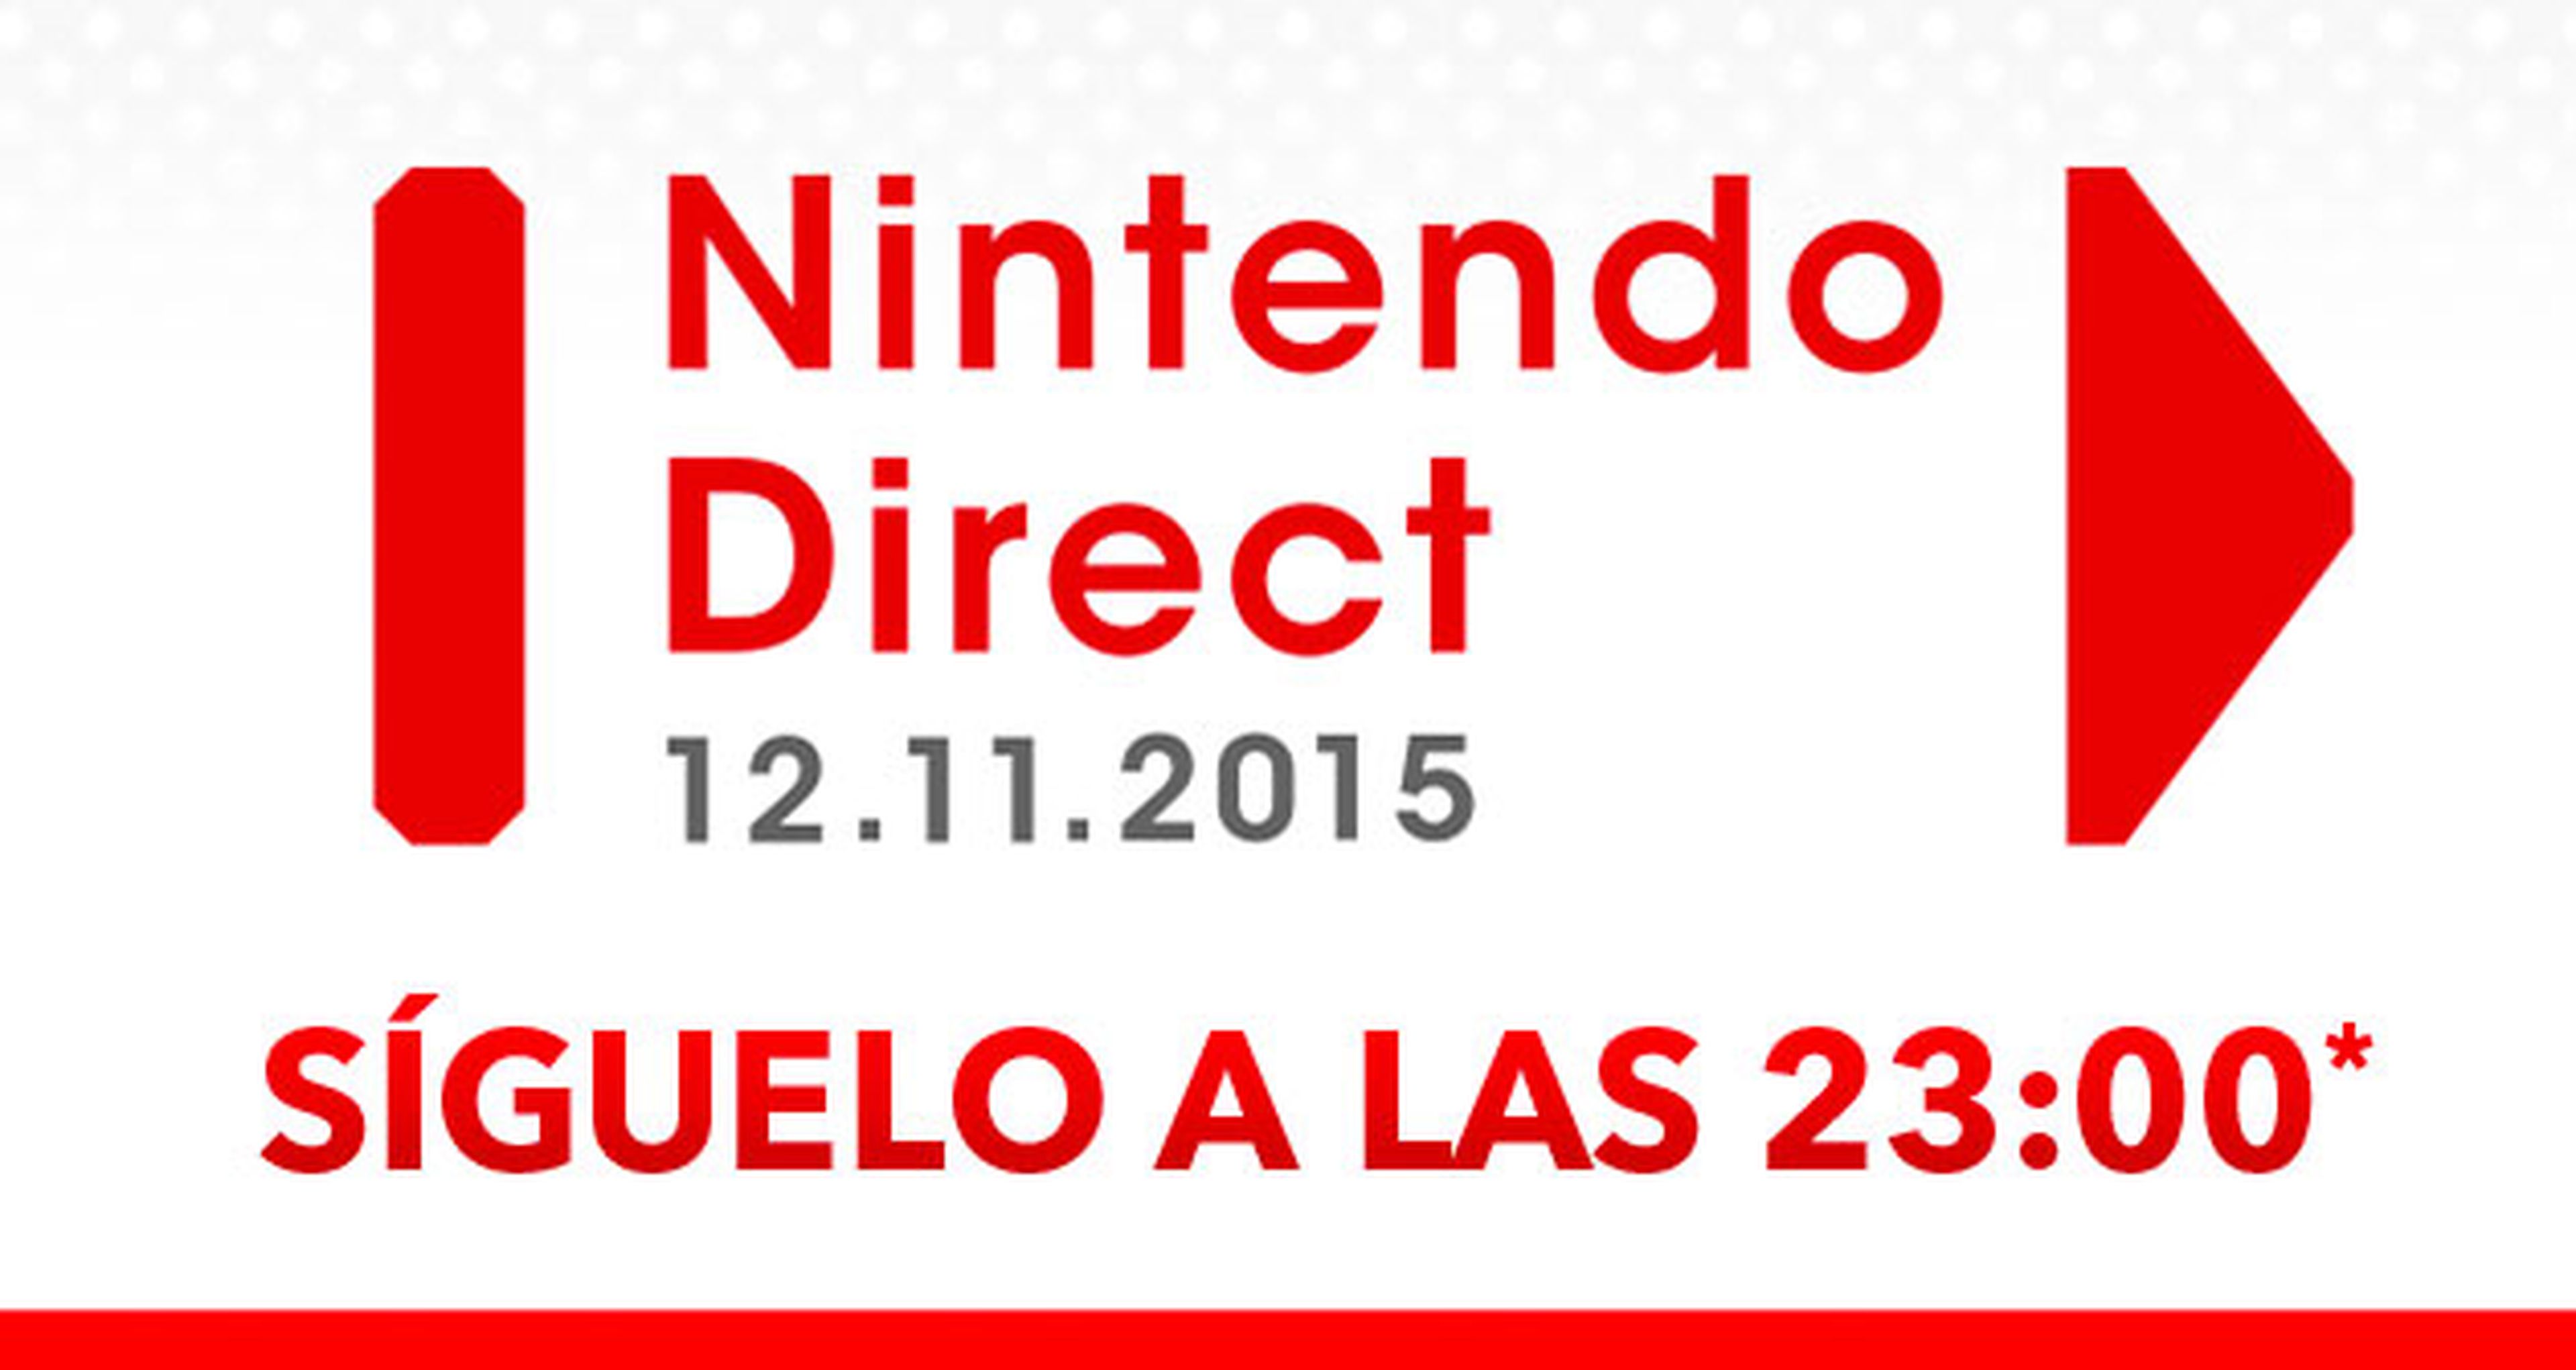 Nintendo Direct 12-11-2015: Vuelve a verlo aquí